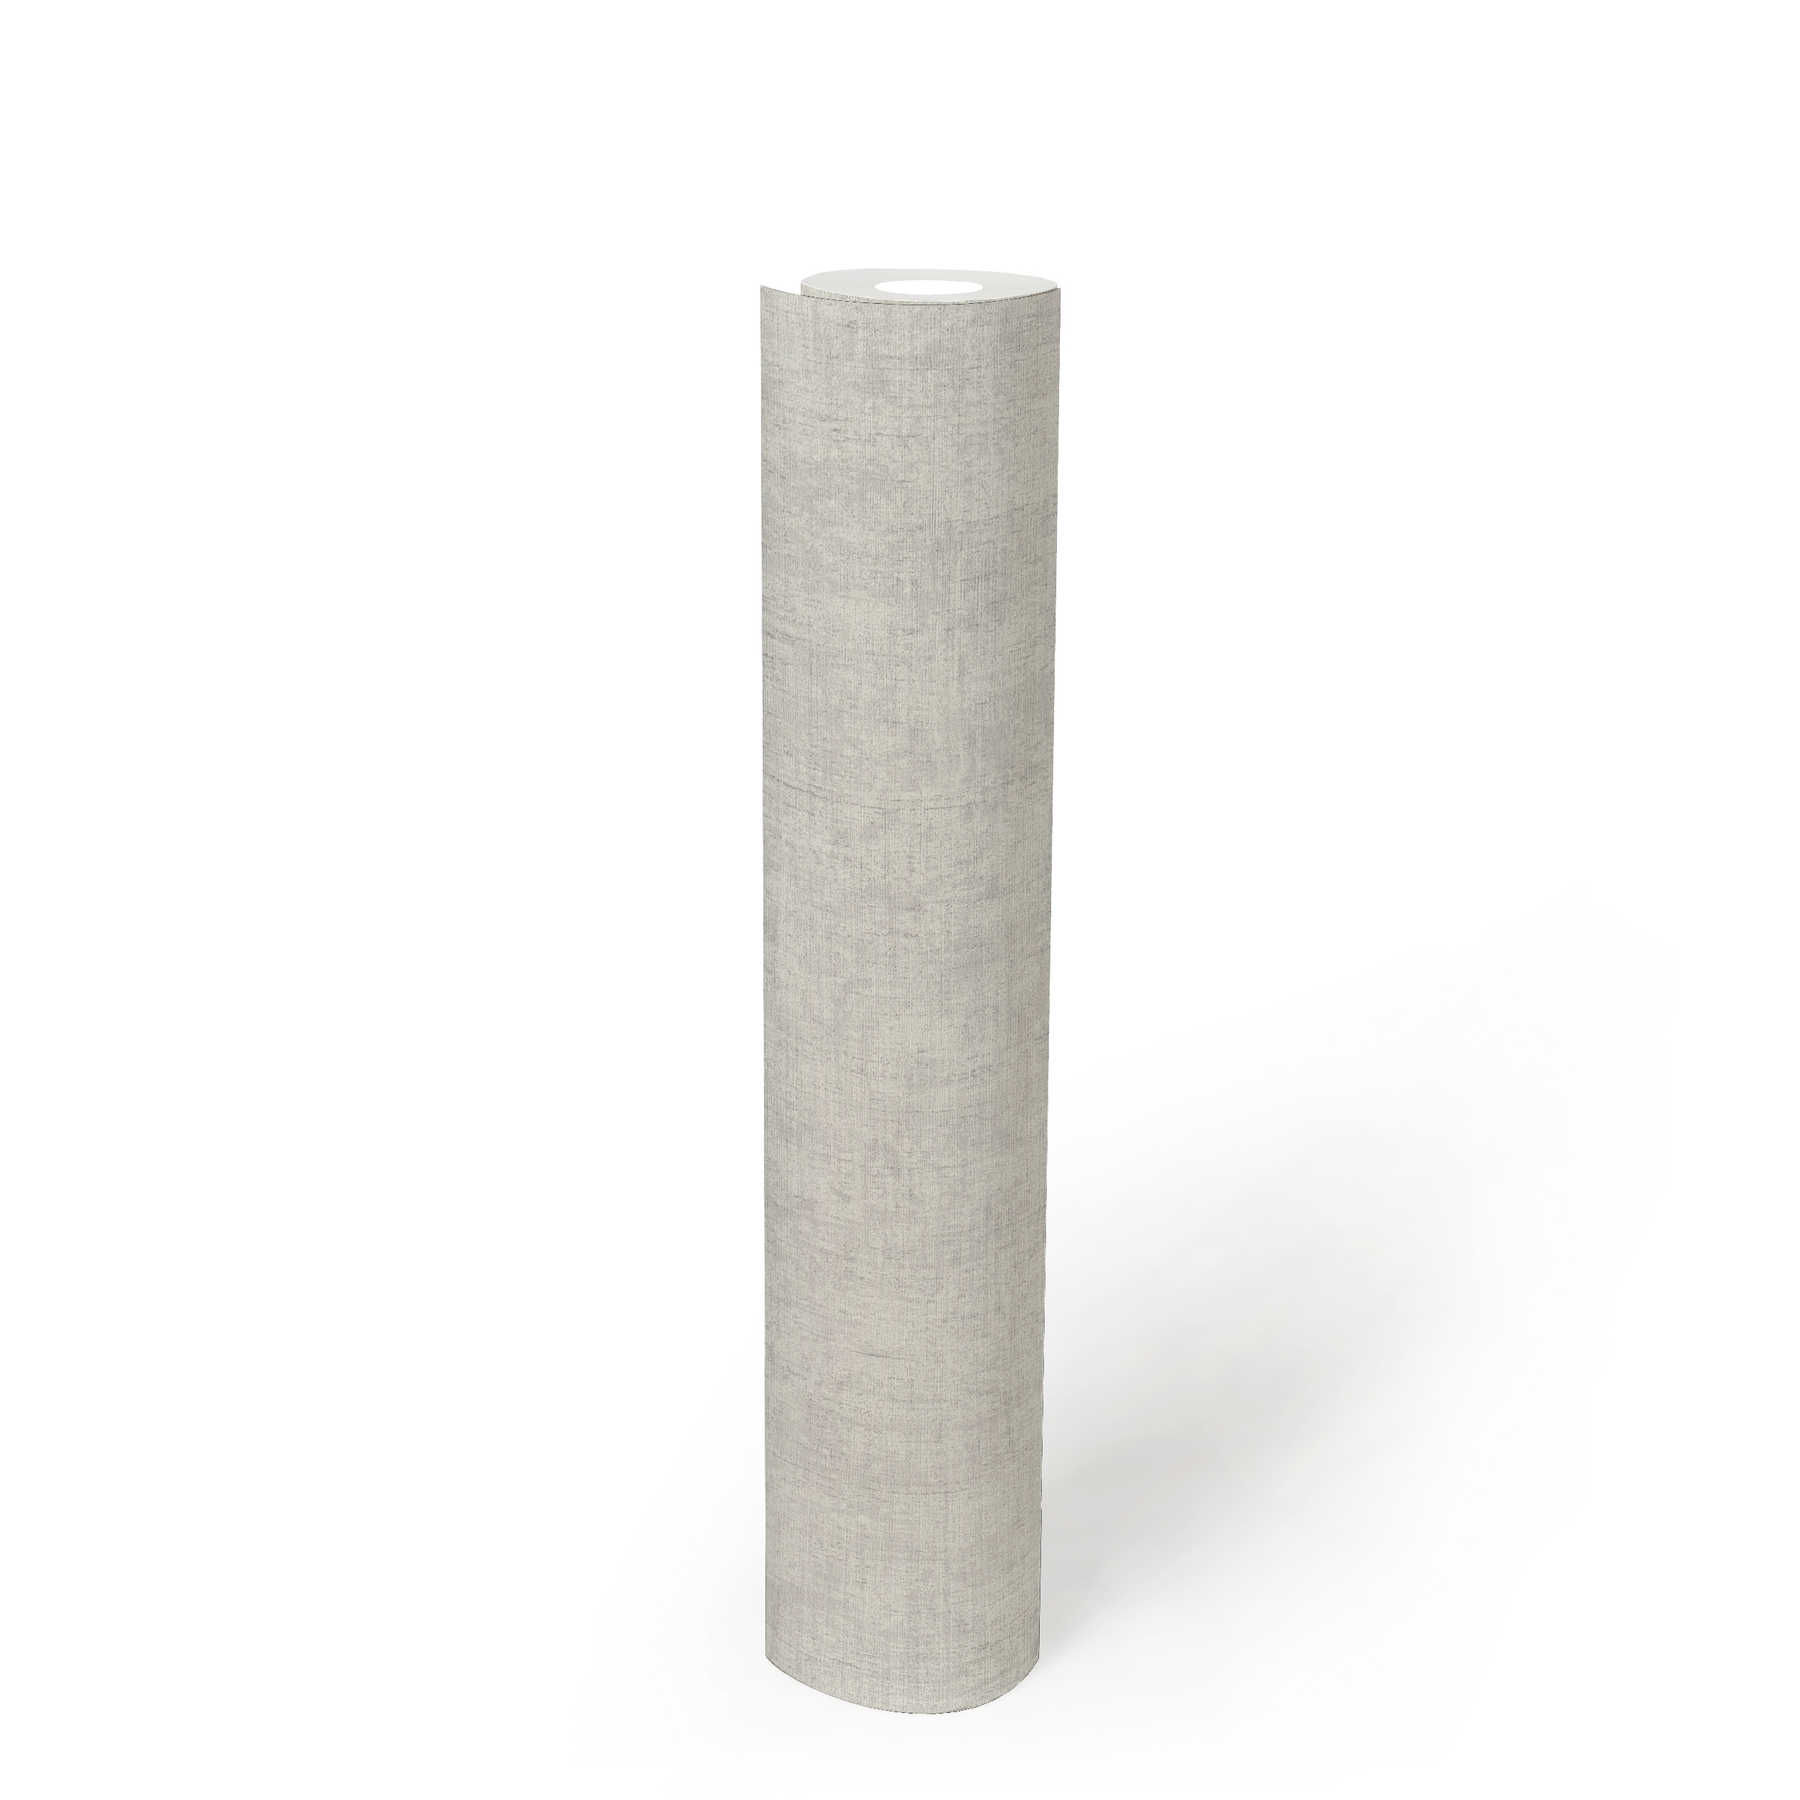             Papel pintado unitario gris claro con aspecto de yeso rústico en diseño vintage
        